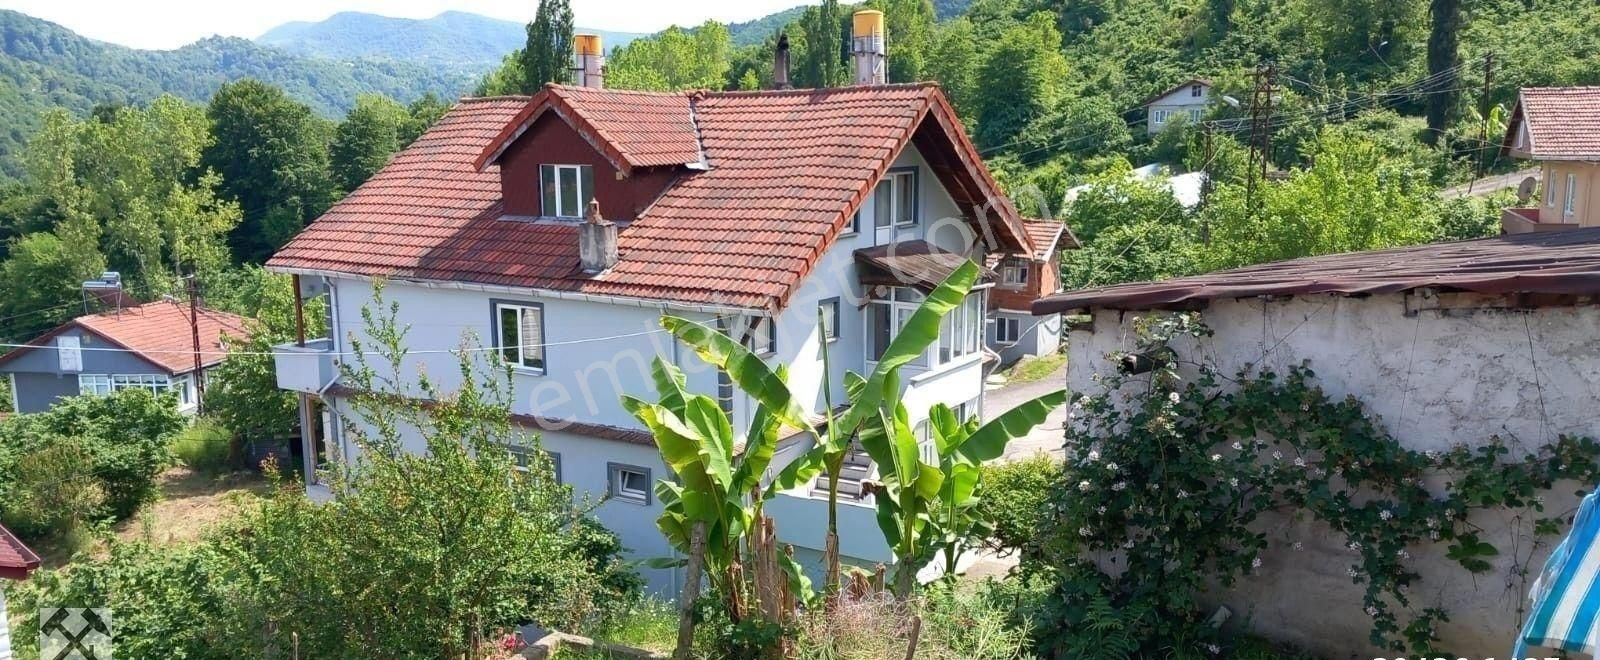 Kozlu İhsaniye Satılık Müstakil Ev Zonguldak Kozlu İlçesi İhsaniye Mahallesi Satılık Müstakil Ev